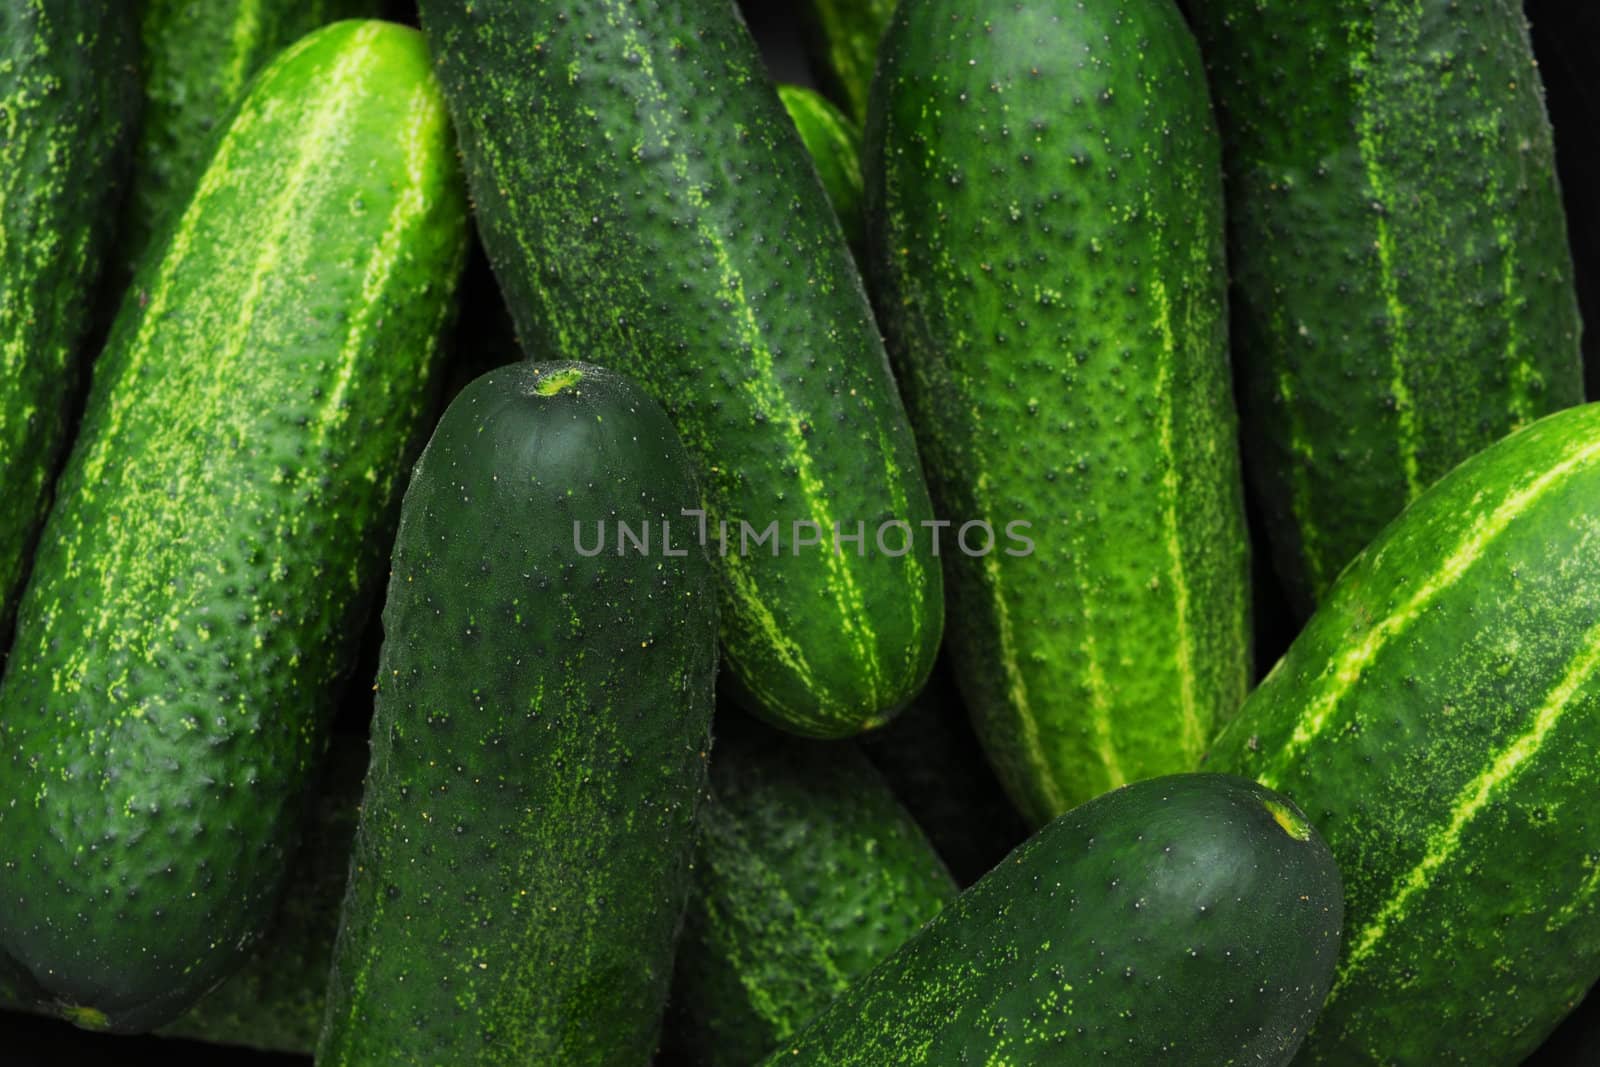 Cucumbers by Yaurinko